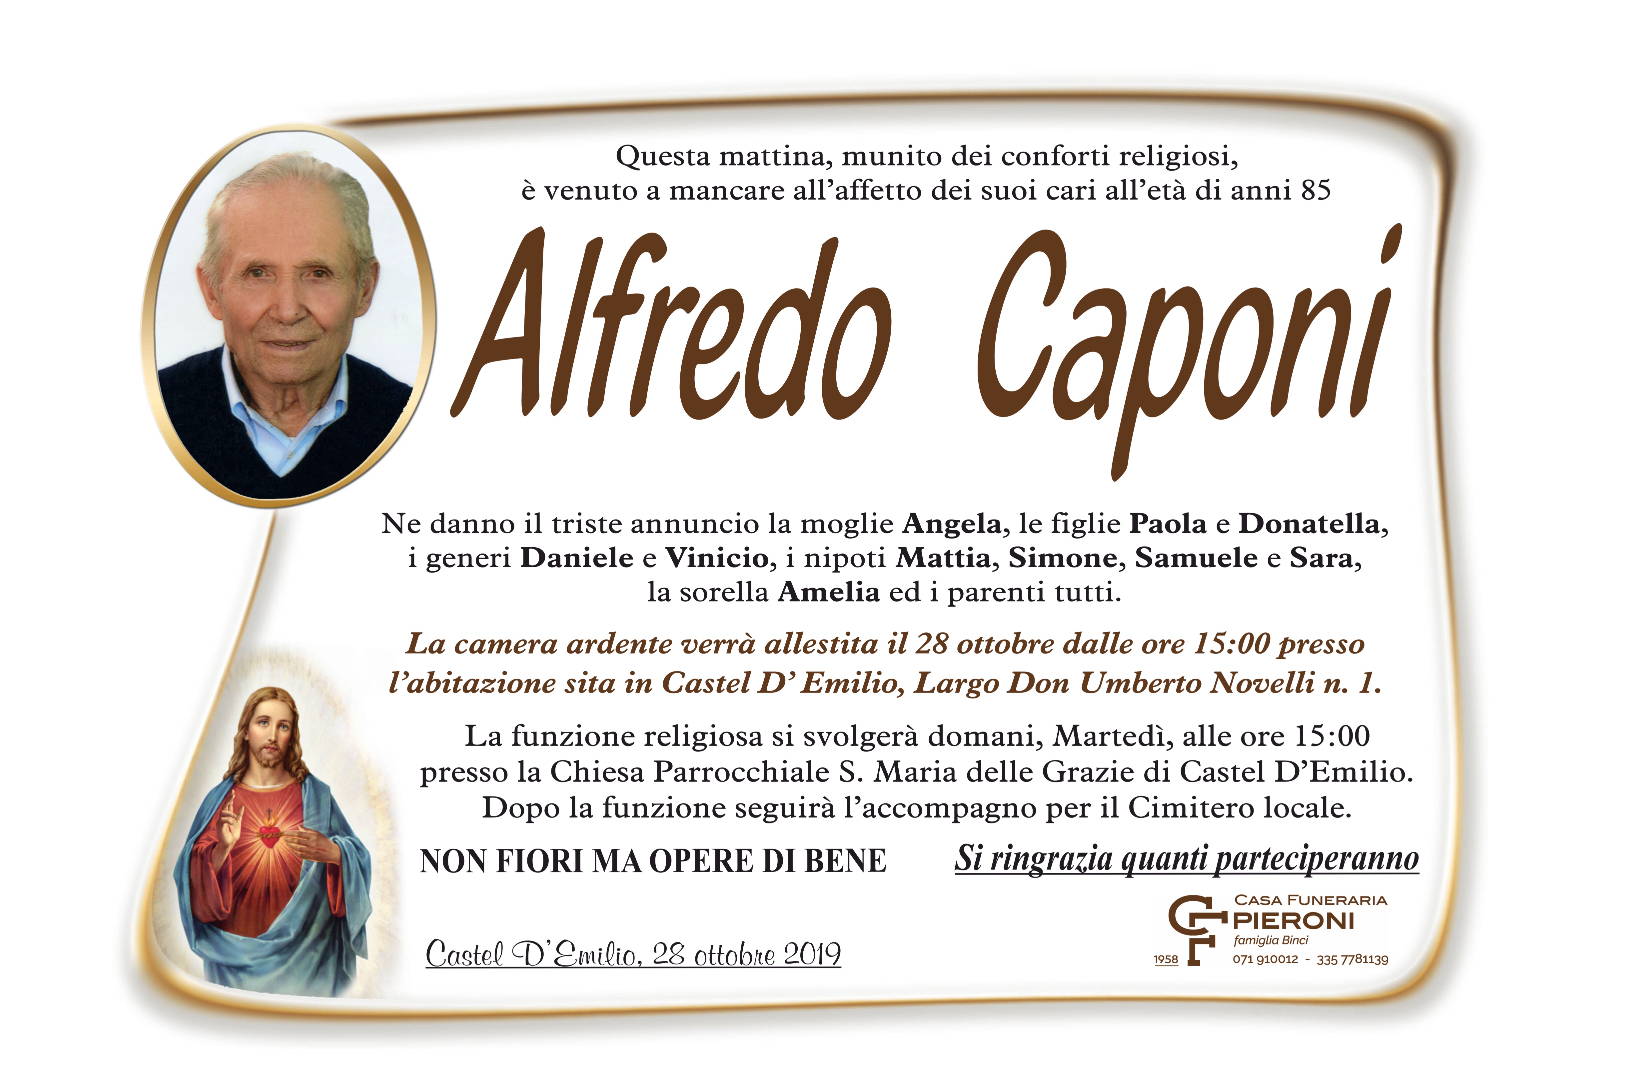 Alfredo Caponi